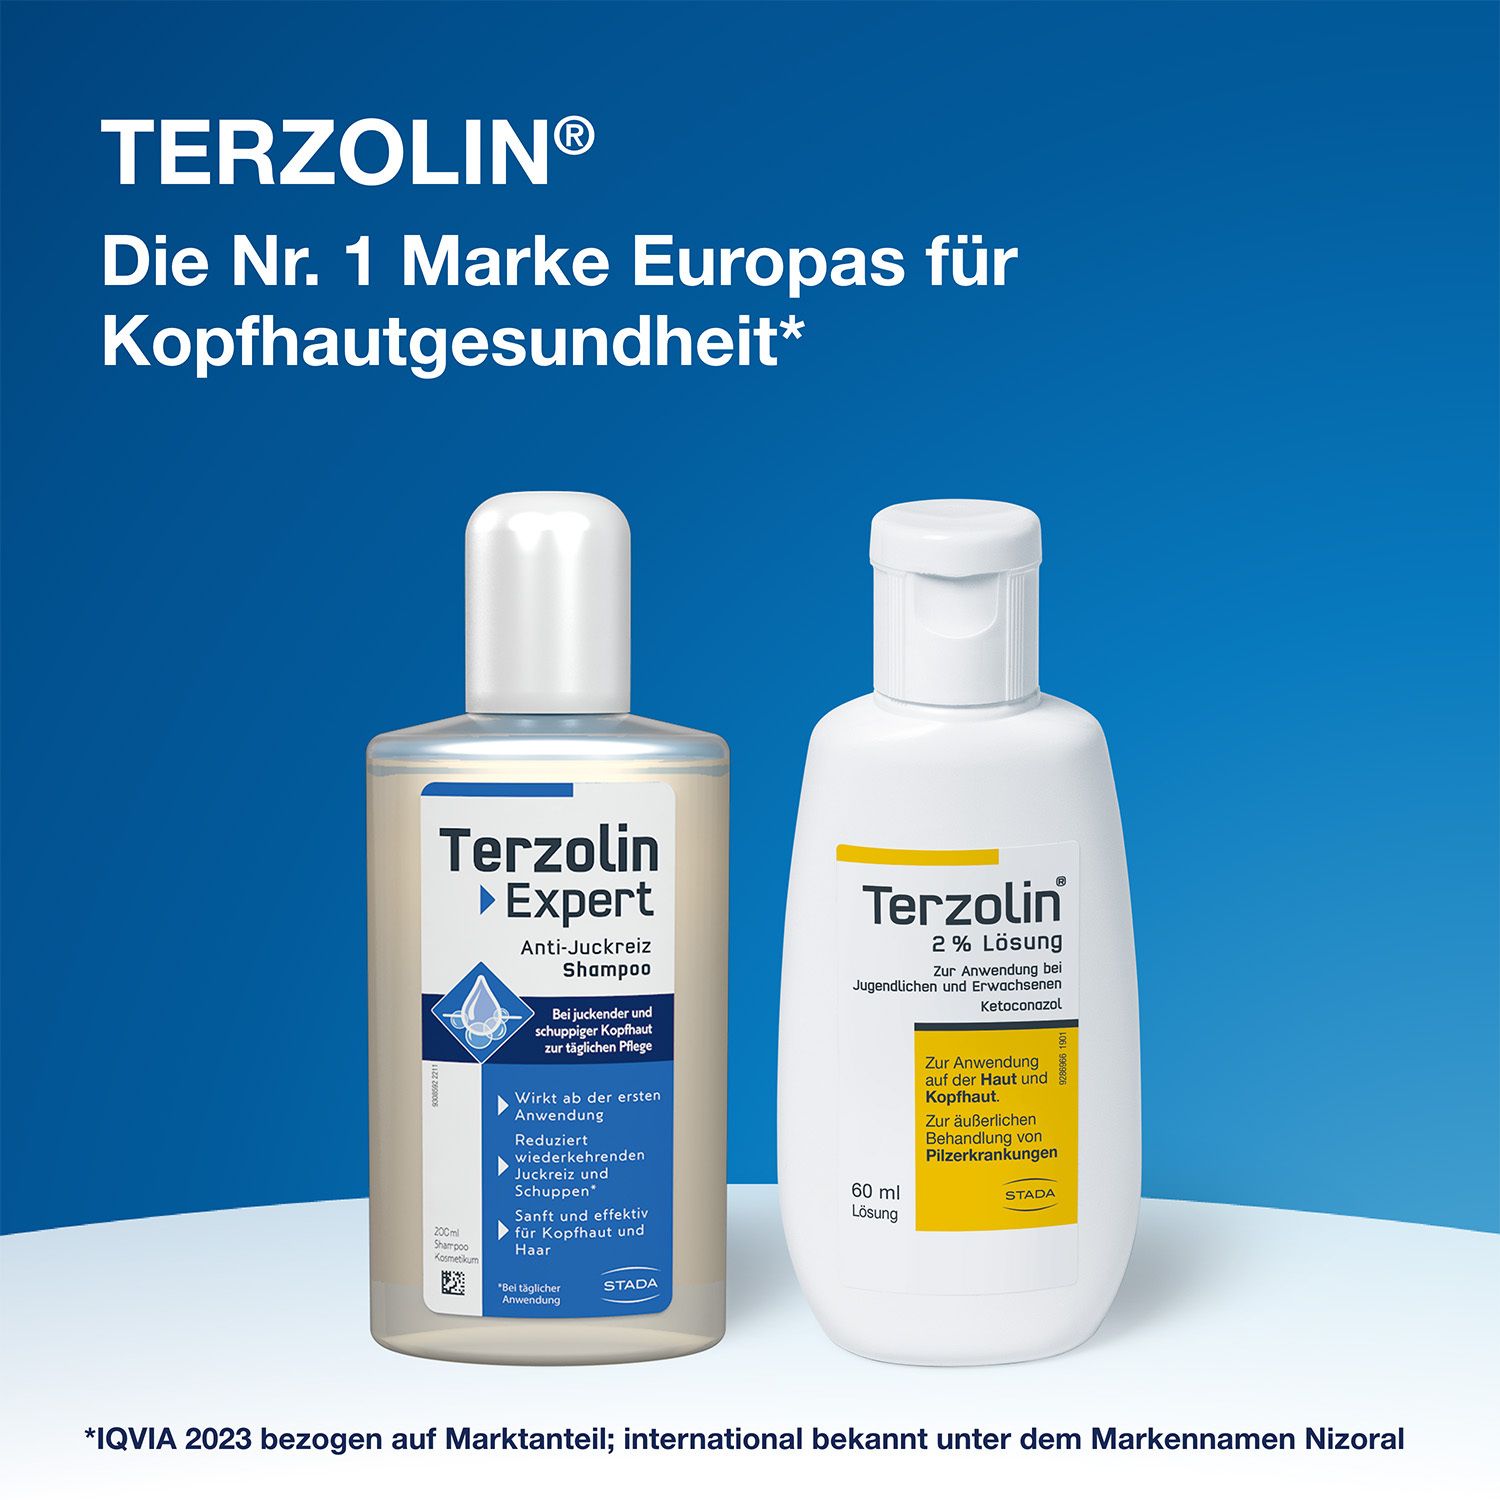 Terzolin® 2% Lösung gegen Pilzbefall und Schuppen